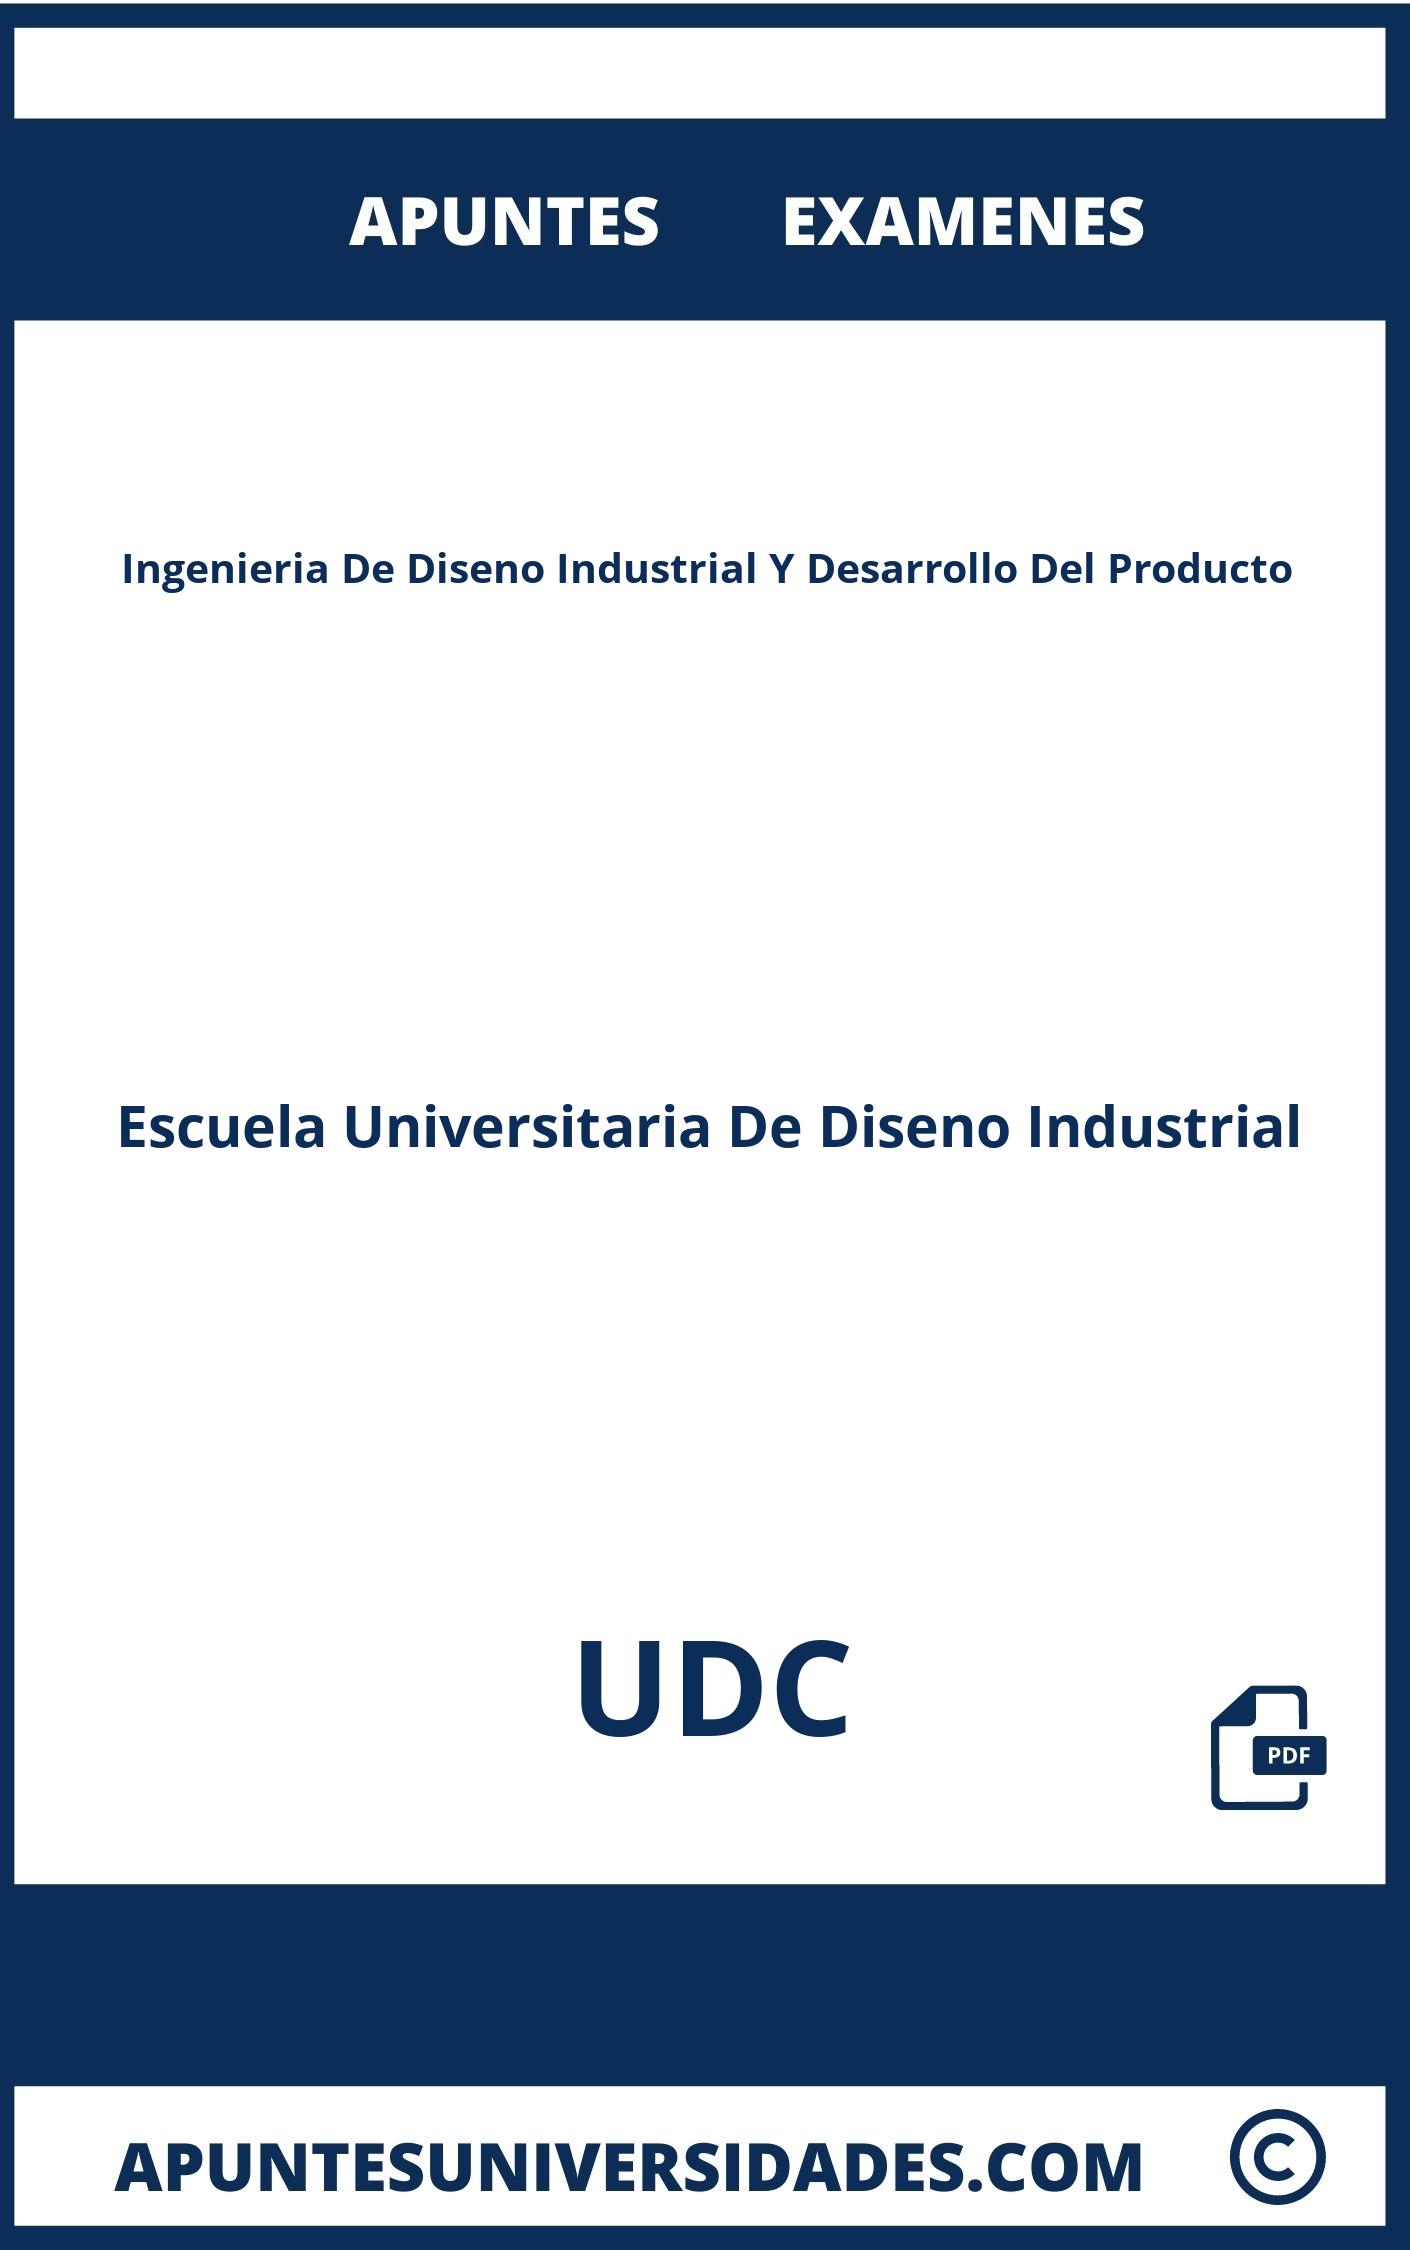 Examenes Apuntes Ingenieria De Diseno Industrial Y Desarrollo Del Producto UDC